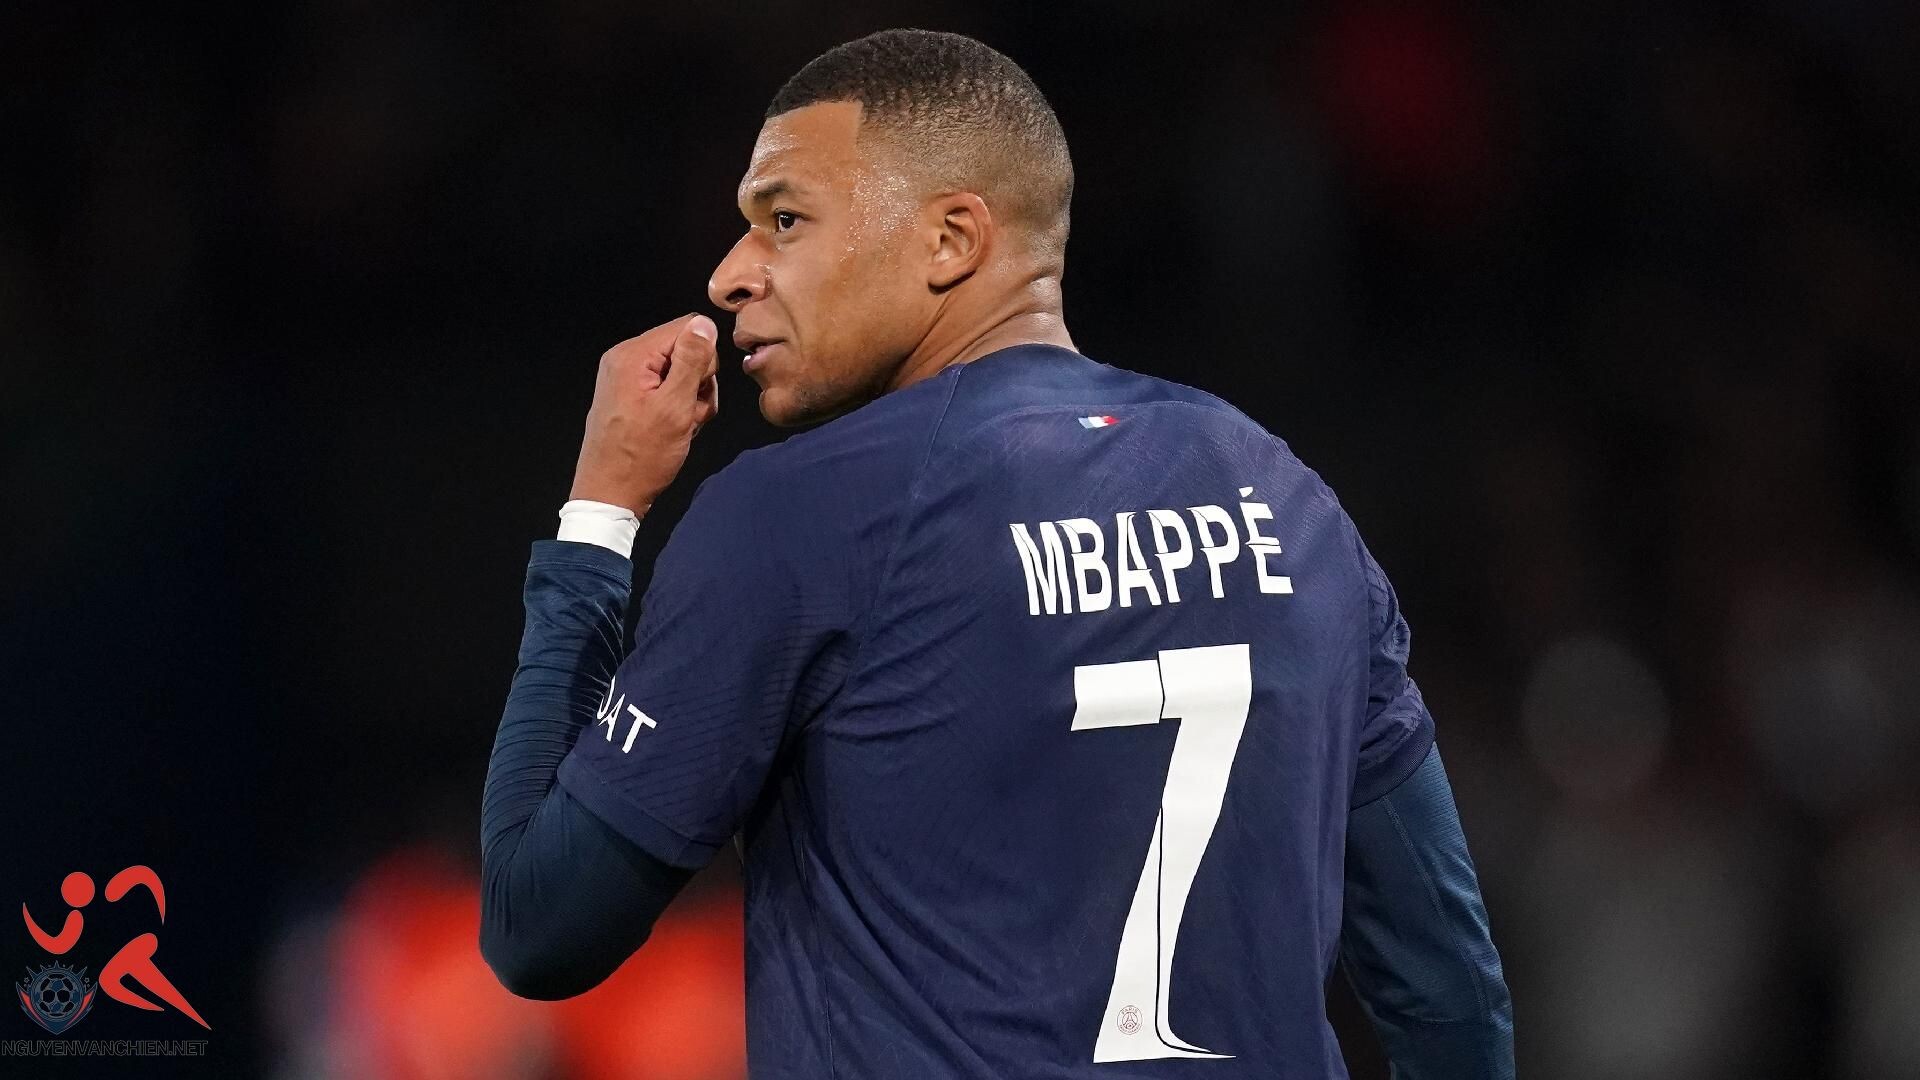 Mức lương của Mbappe tại Paris Saint Germain là bao nhiêu?